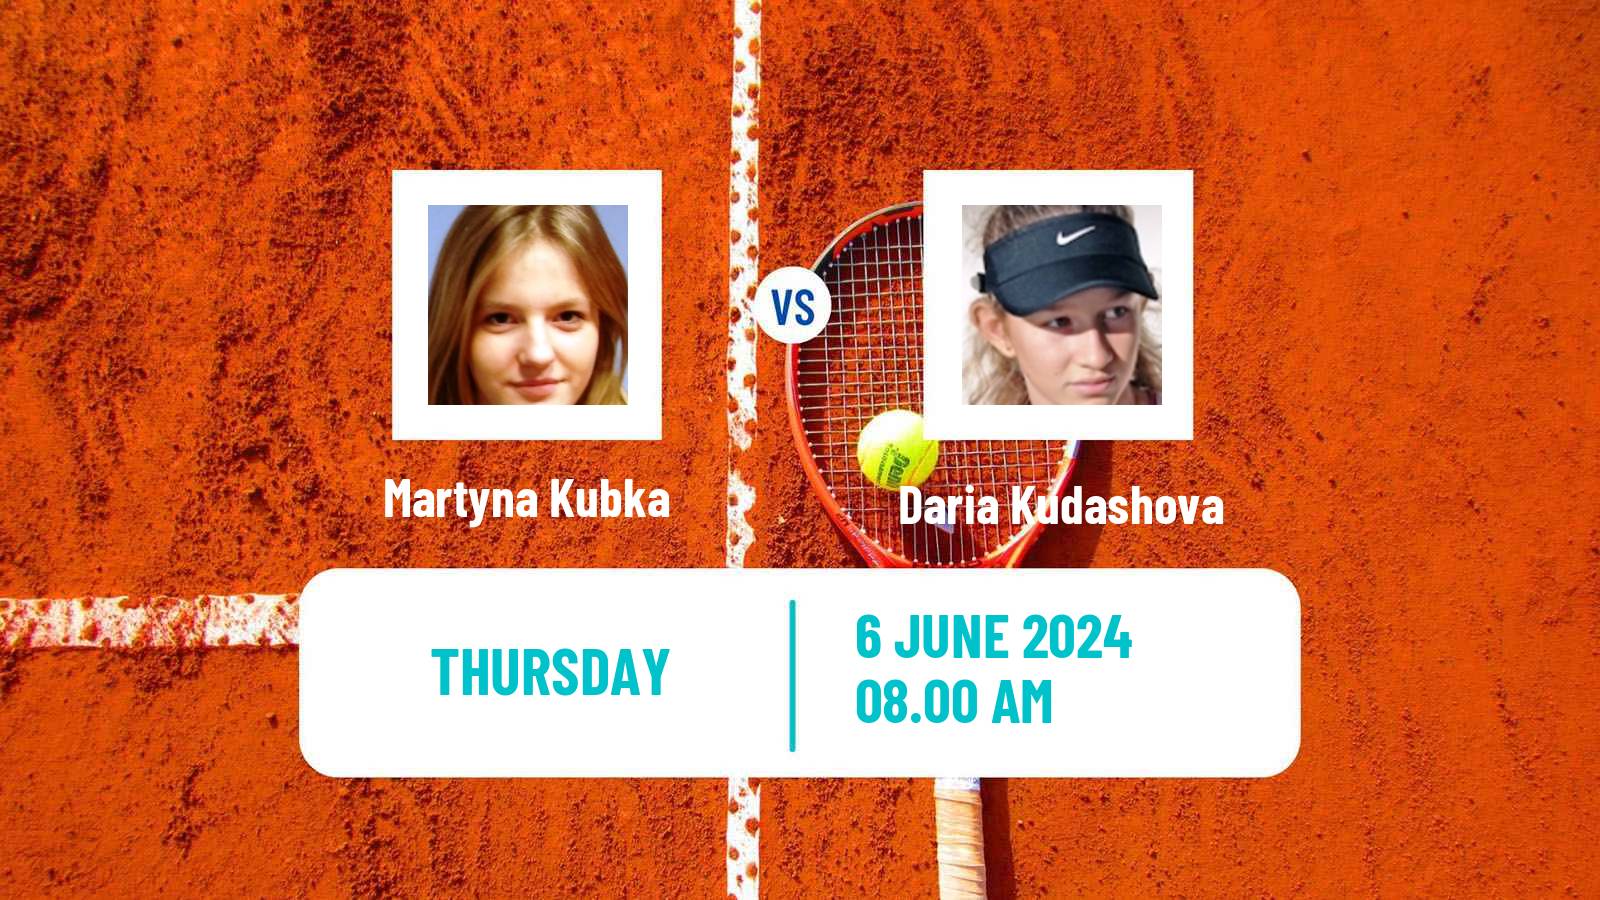 Tennis ITF W50 La Marsa Women Martyna Kubka - Daria Kudashova